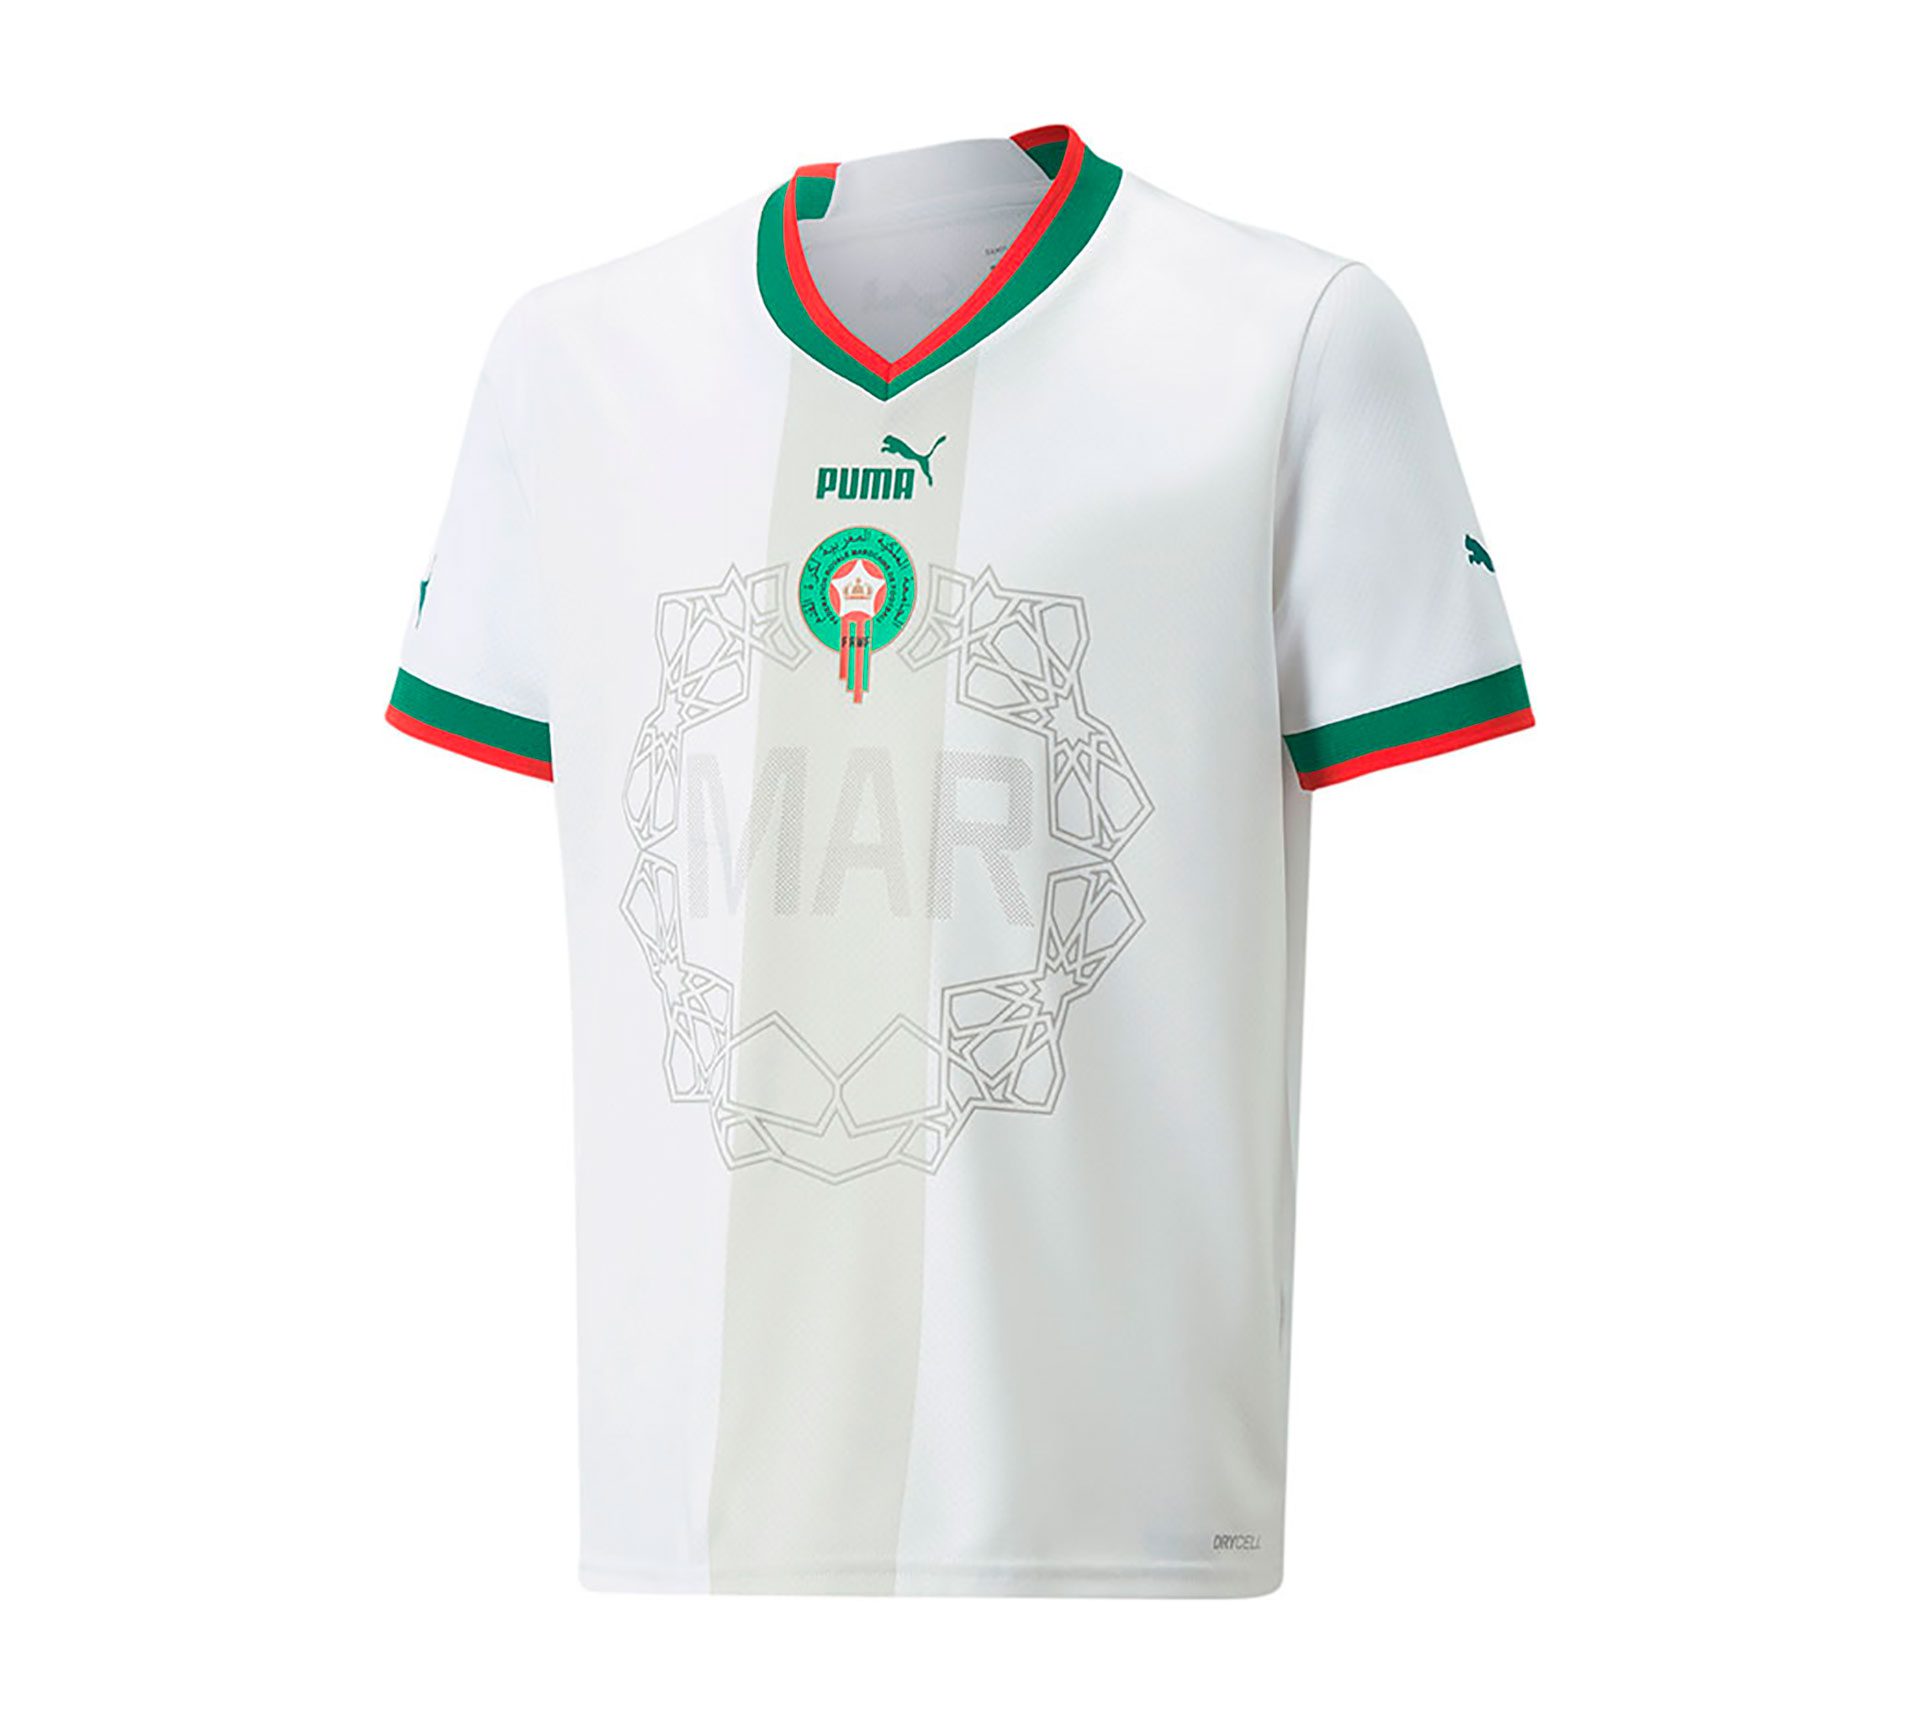 morocco national team shirt